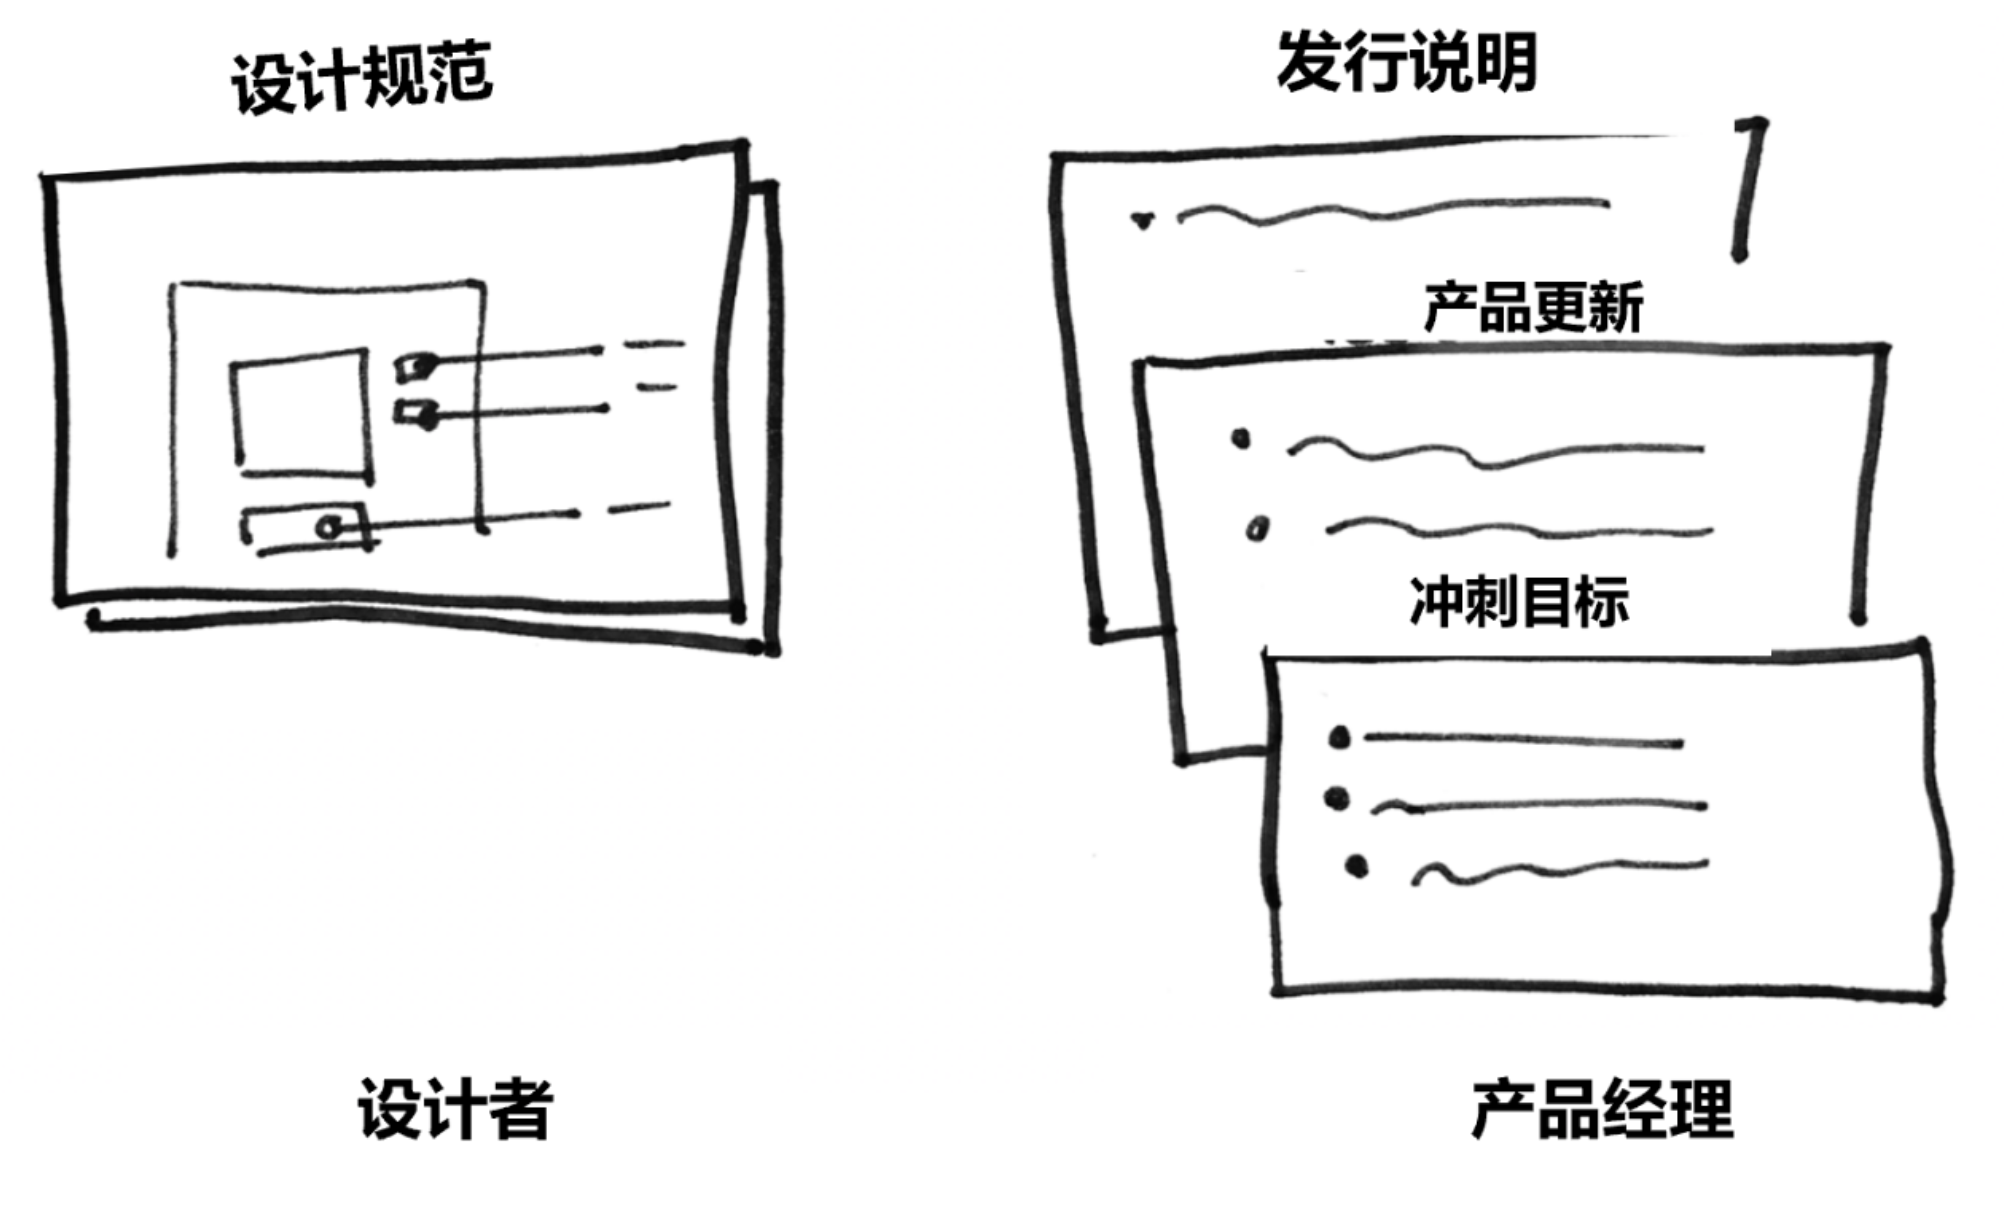 设计师转向产品经理 6 个意想不到的差异插图(2)